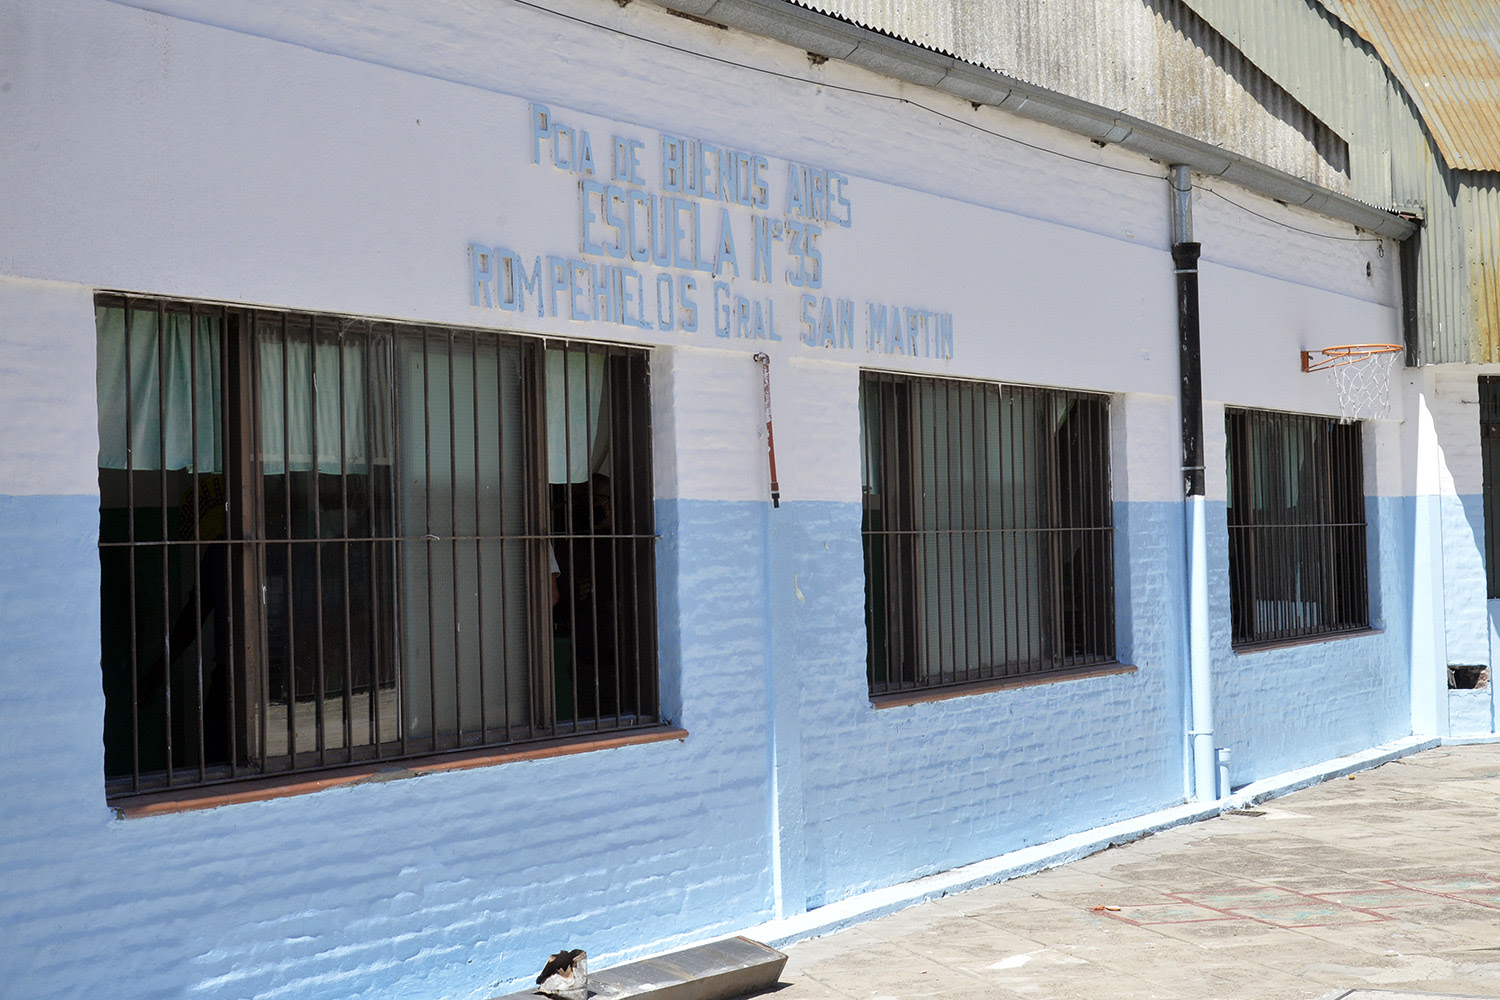 Julio Zamora supervisó la obra del nuevo edificio de la secundaria N°19 y trabajos de infraestructura escolar en distintos puntos de Tigre